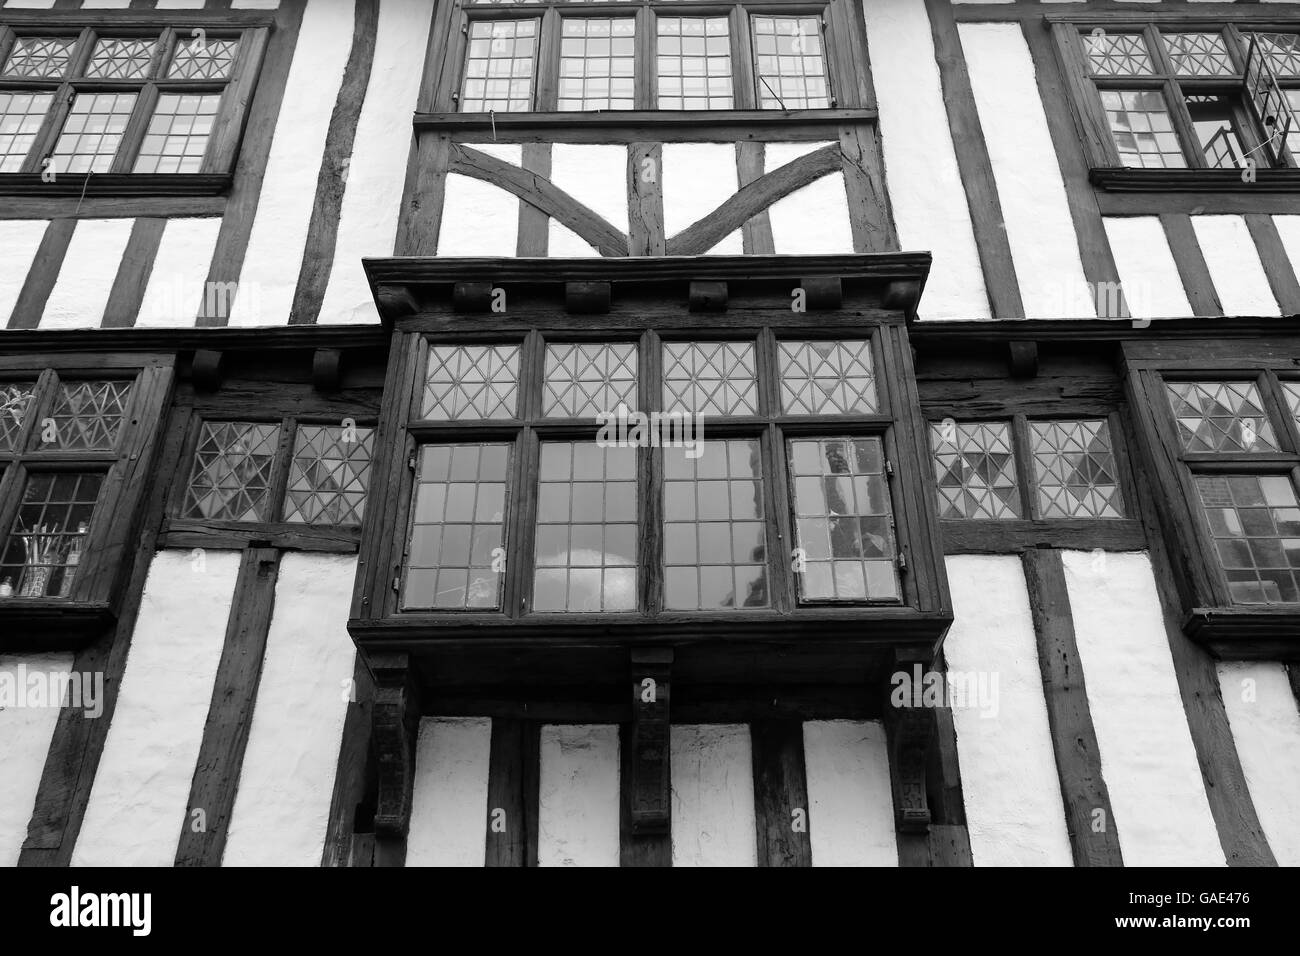 Fenêtres à vitraux et pans de la construction d'un bâtiment à Canterbury, Angleterre. Banque D'Images